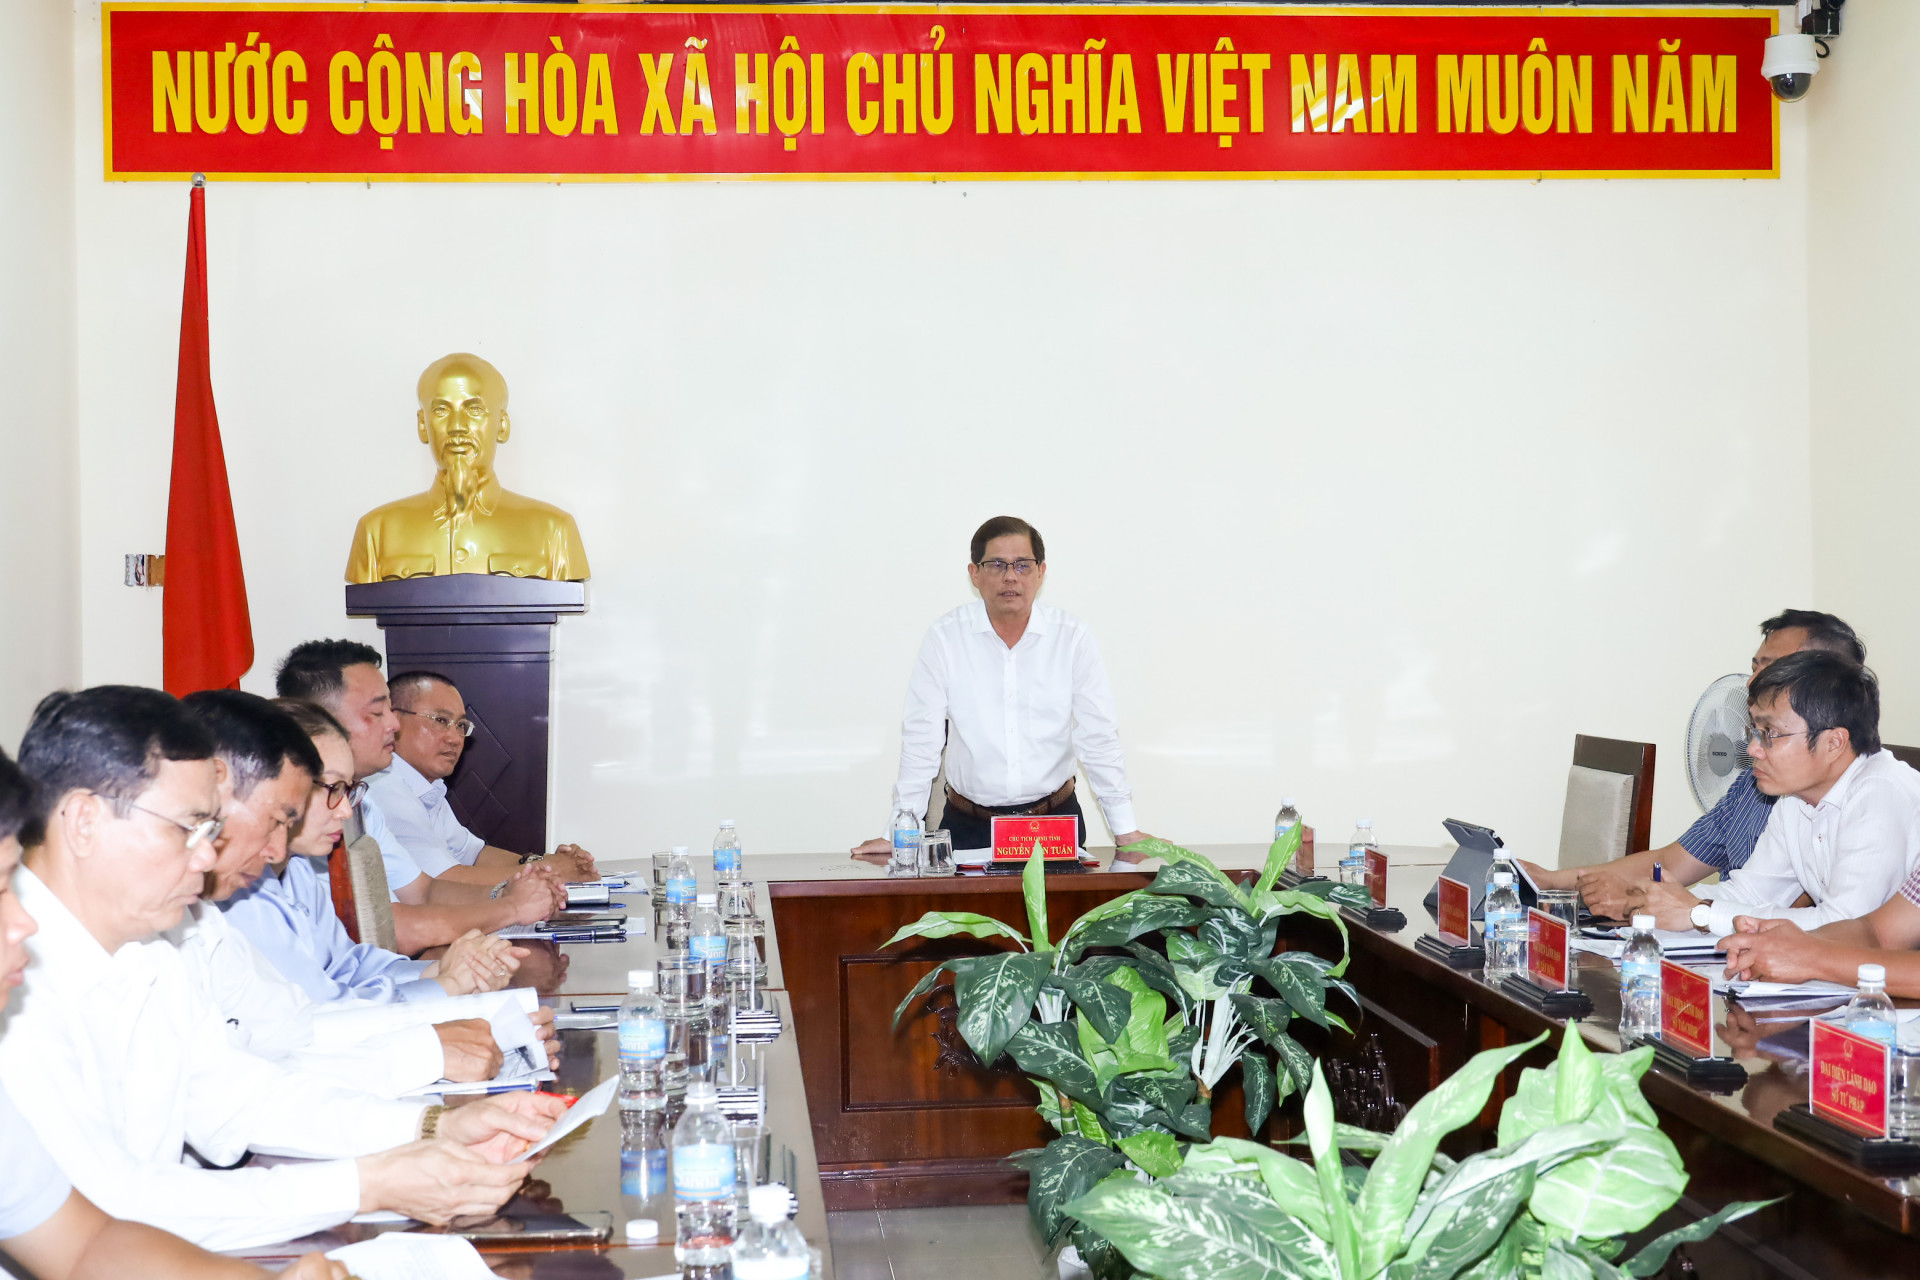 Đồng chí Nguyễn Tấn Tuân tại buổi tiếp công dân định kỳ tháng 3.